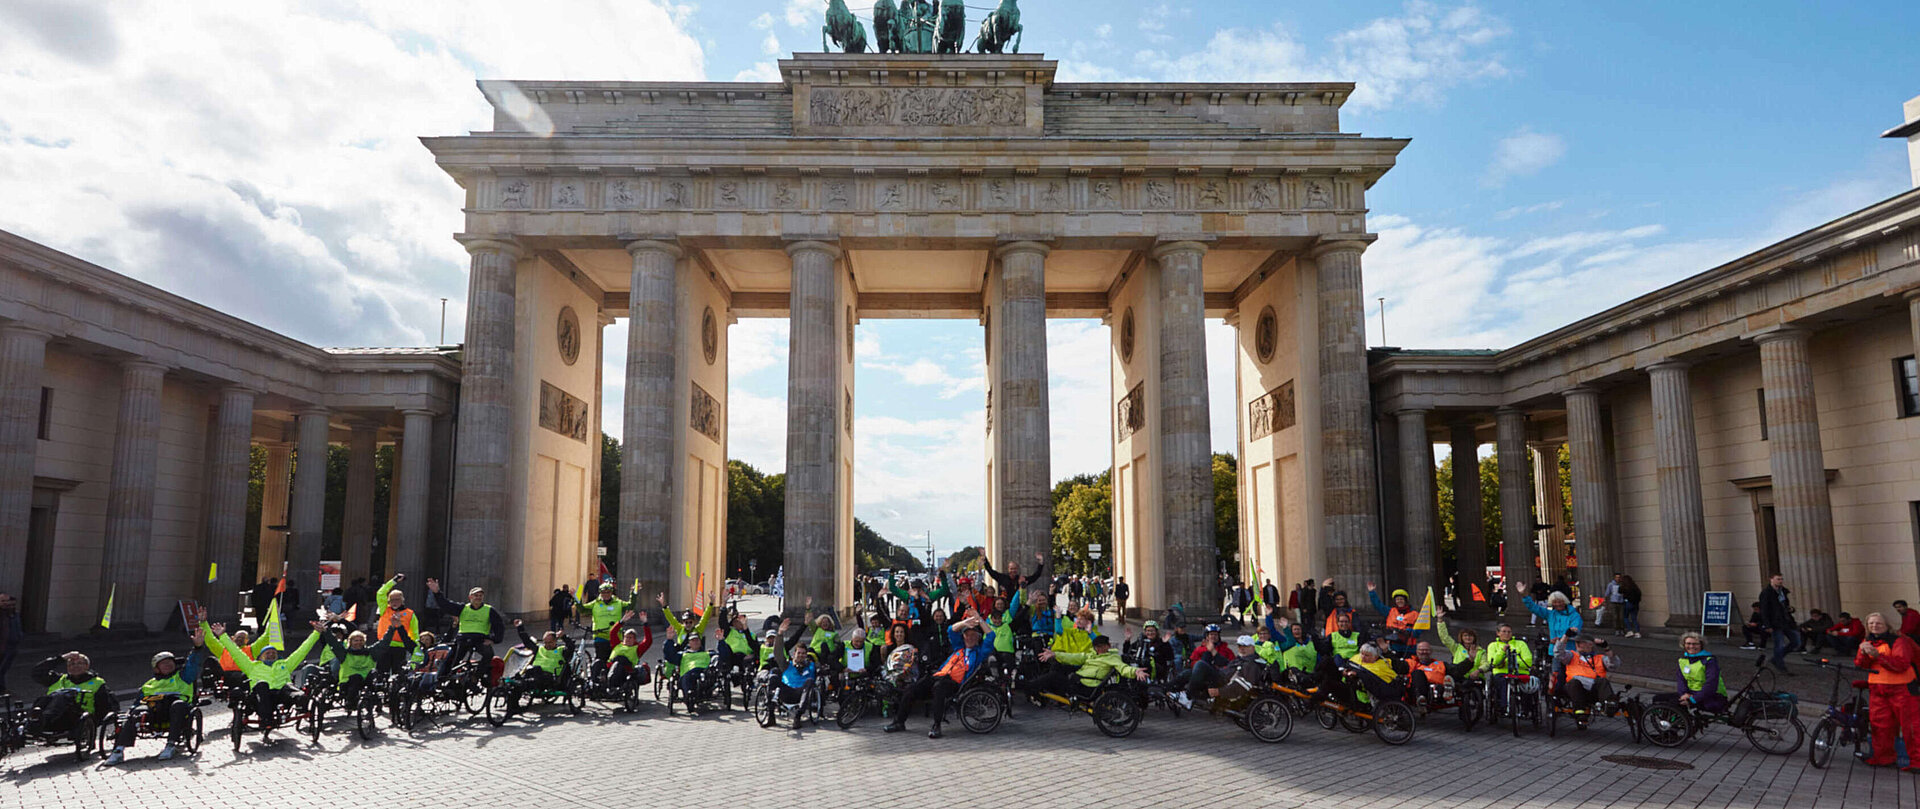 Gruppenfoto von Menschen auf Fahrrädern vor dem Brandenburger Tor.